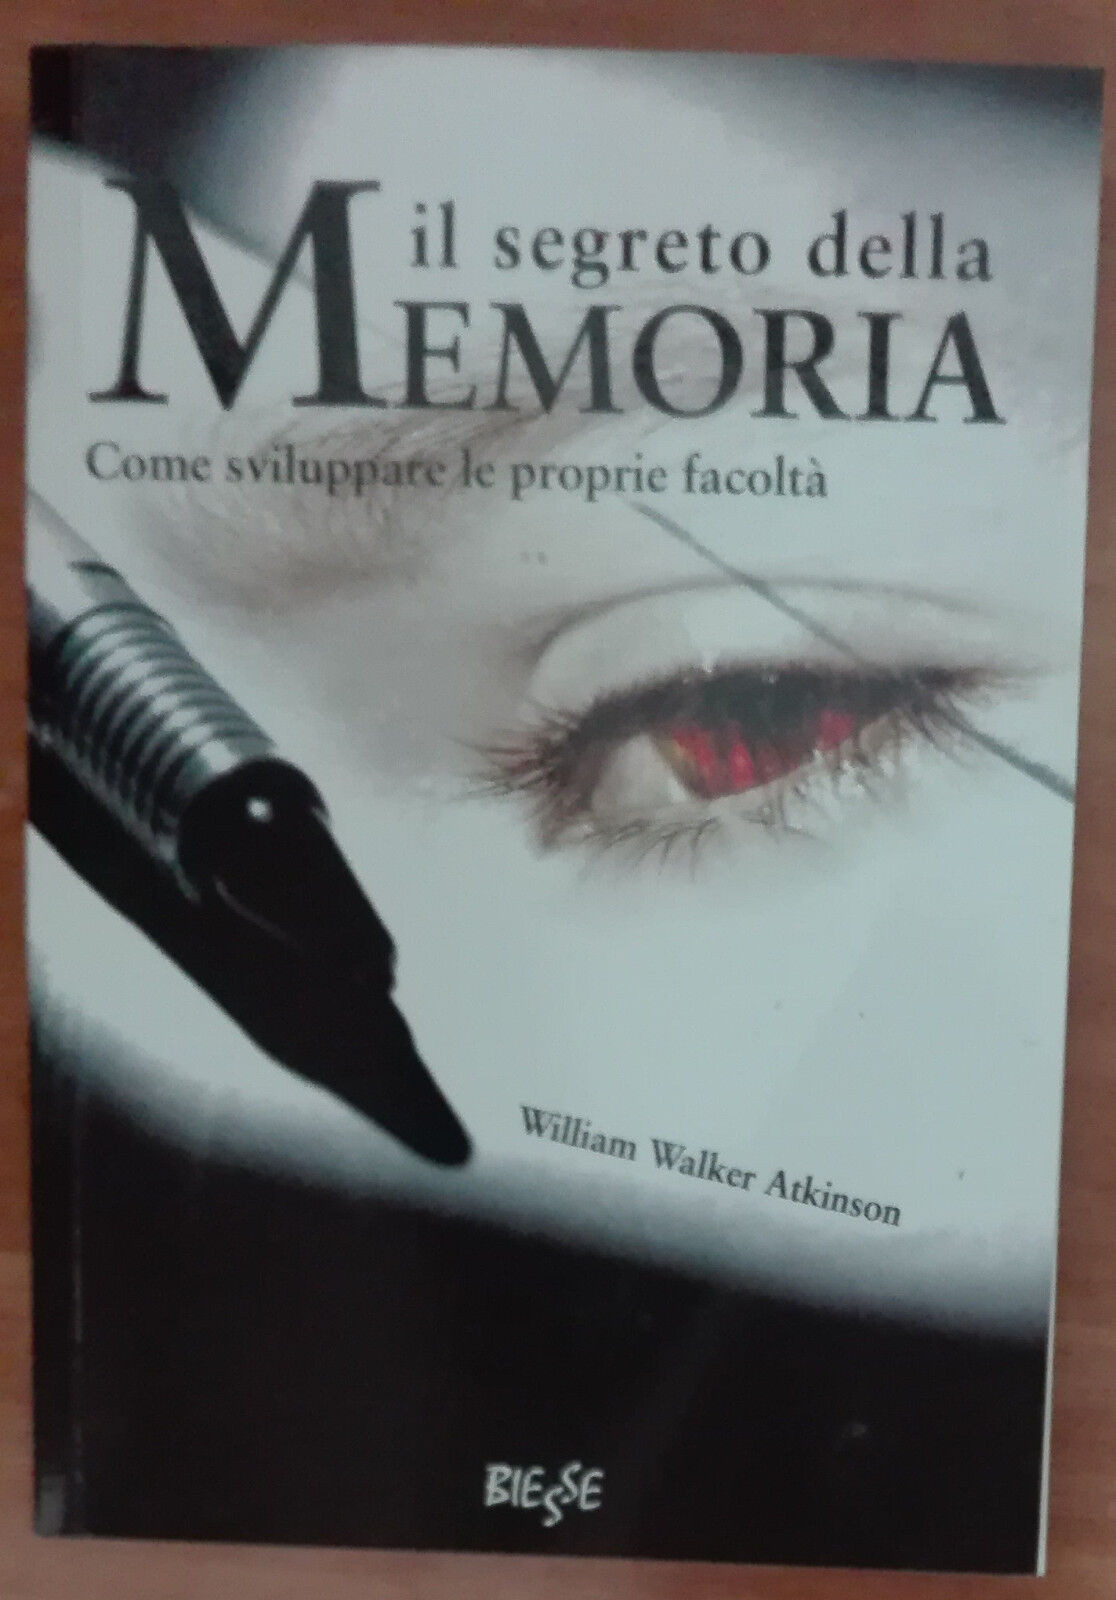 Il segreto della memoria - William W. Atkinson - Biesse,2008 - A